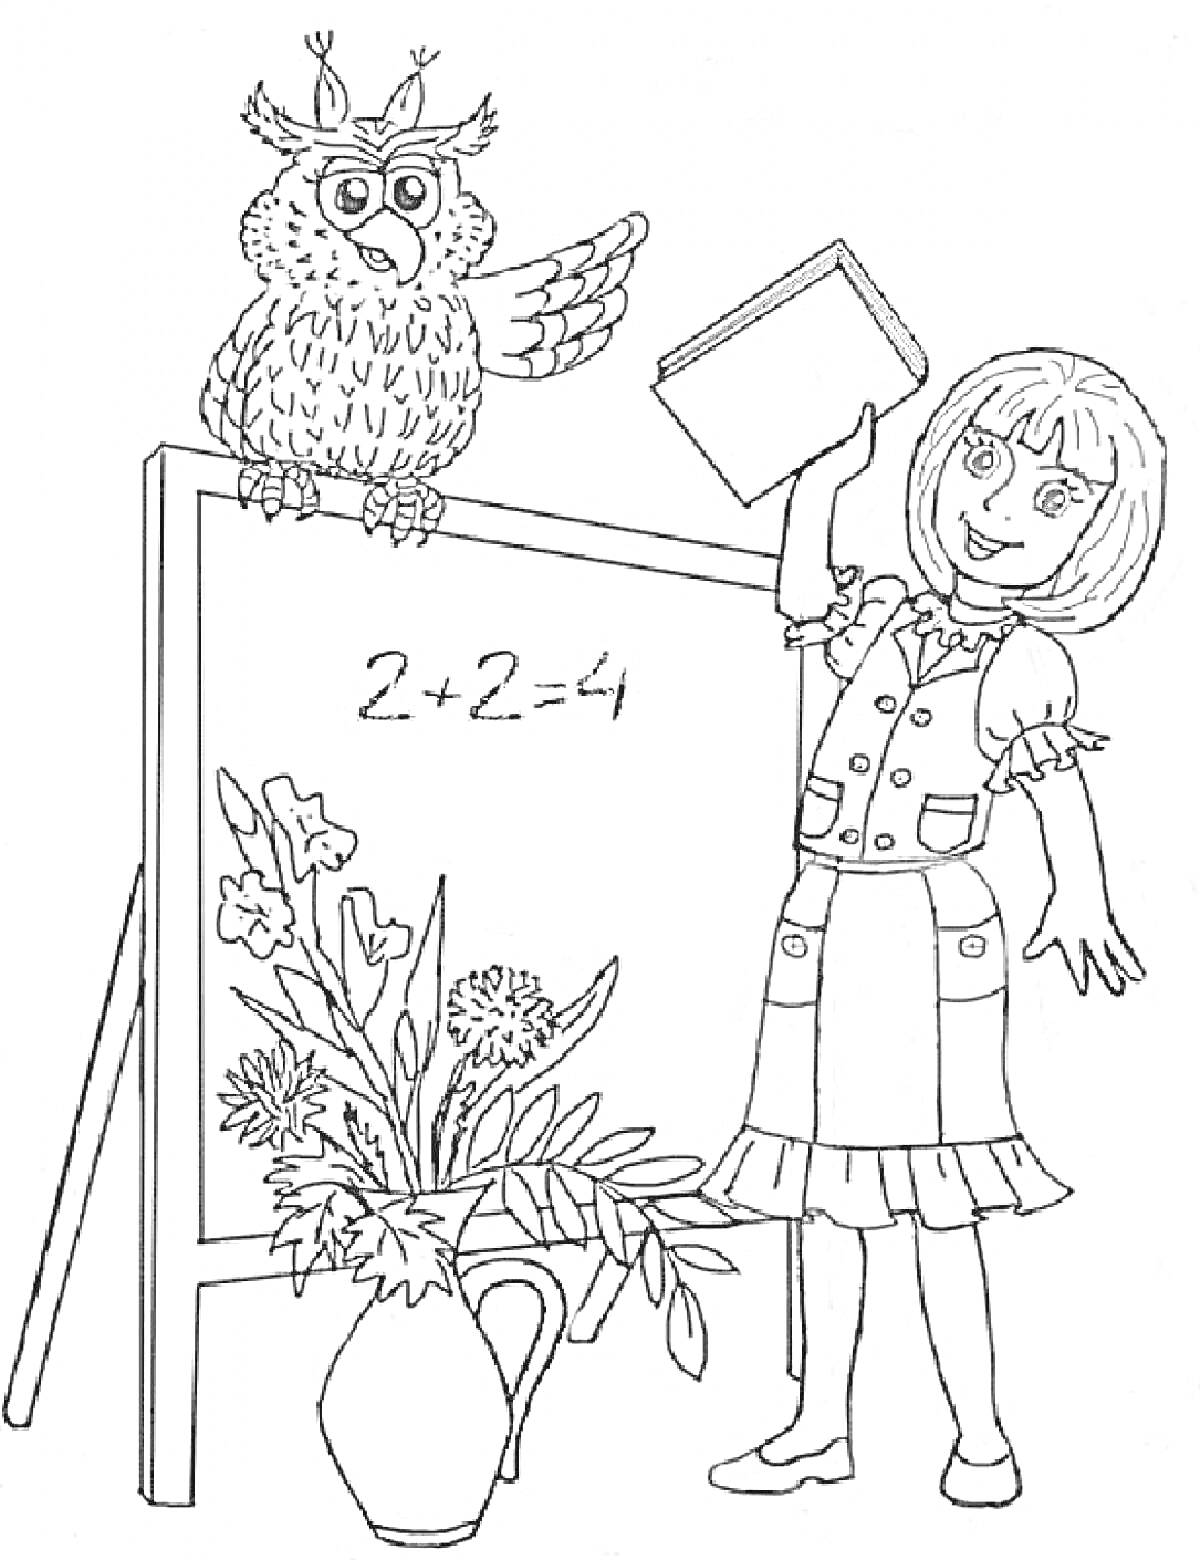 Сова на доске, учитель с книгой, цветы в вазе, доска с уравнением 2+2=4